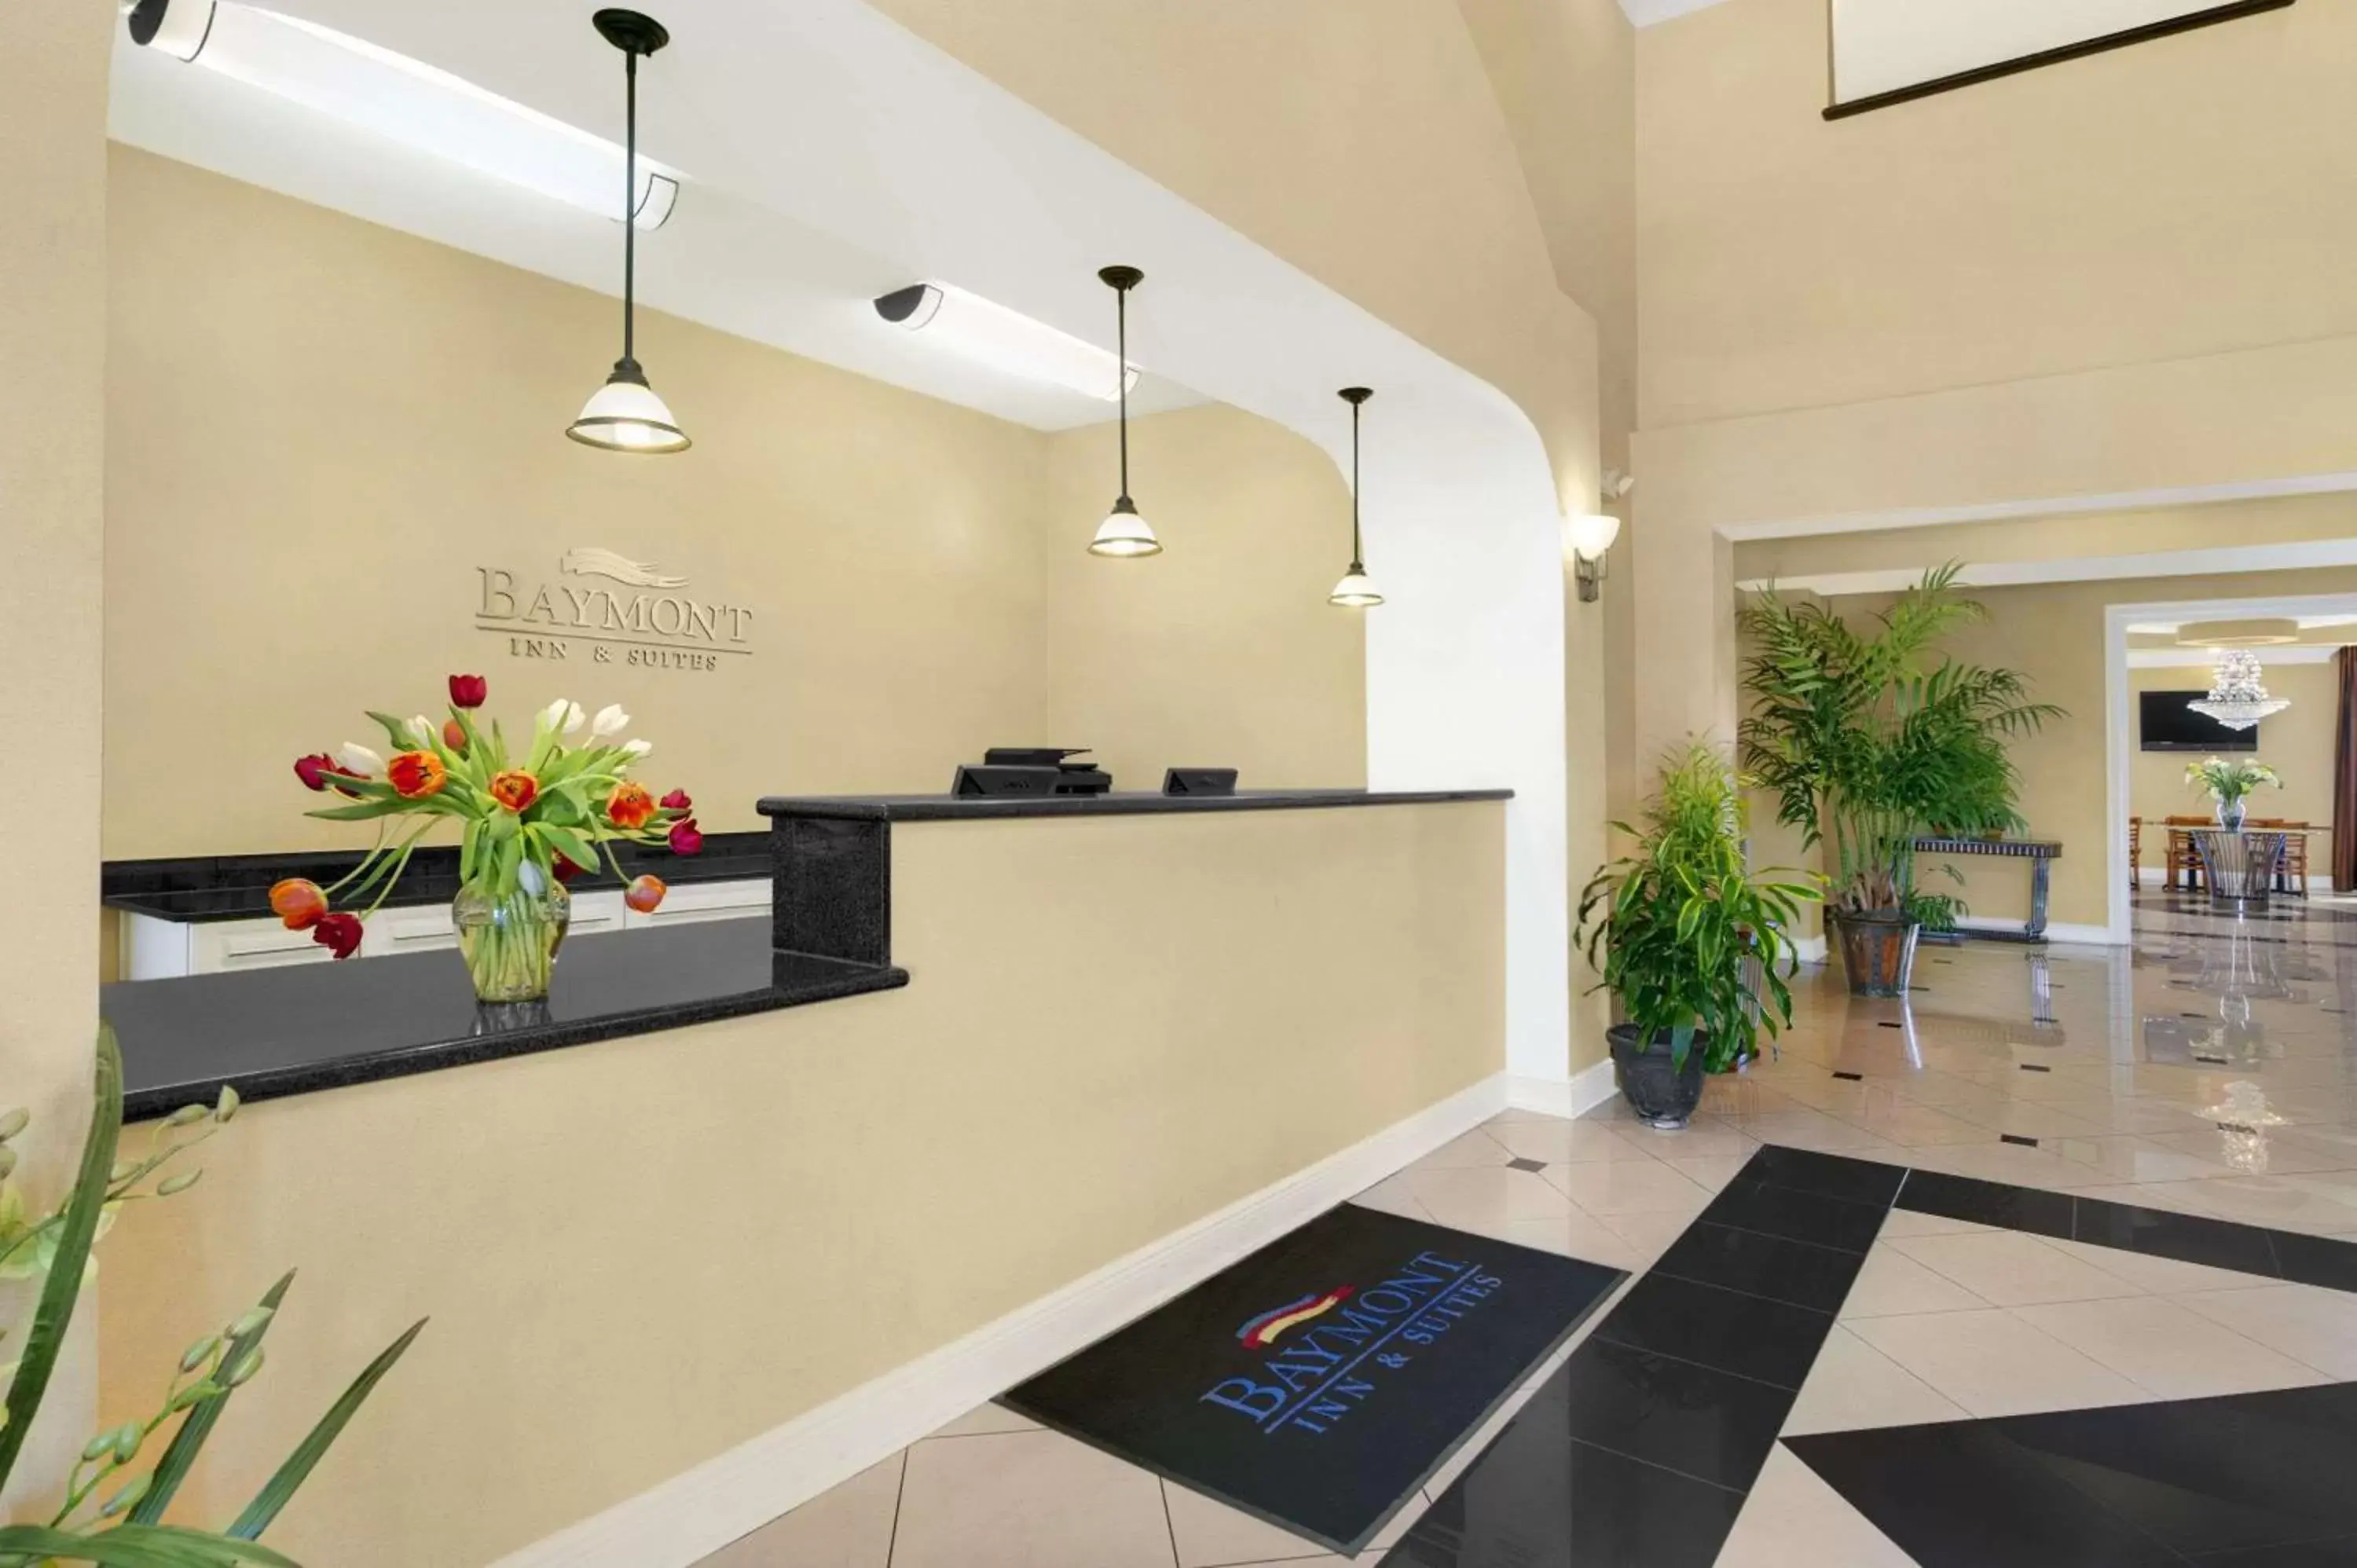 Lobby or reception, Lobby/Reception in Baymont by Wyndham Marrero